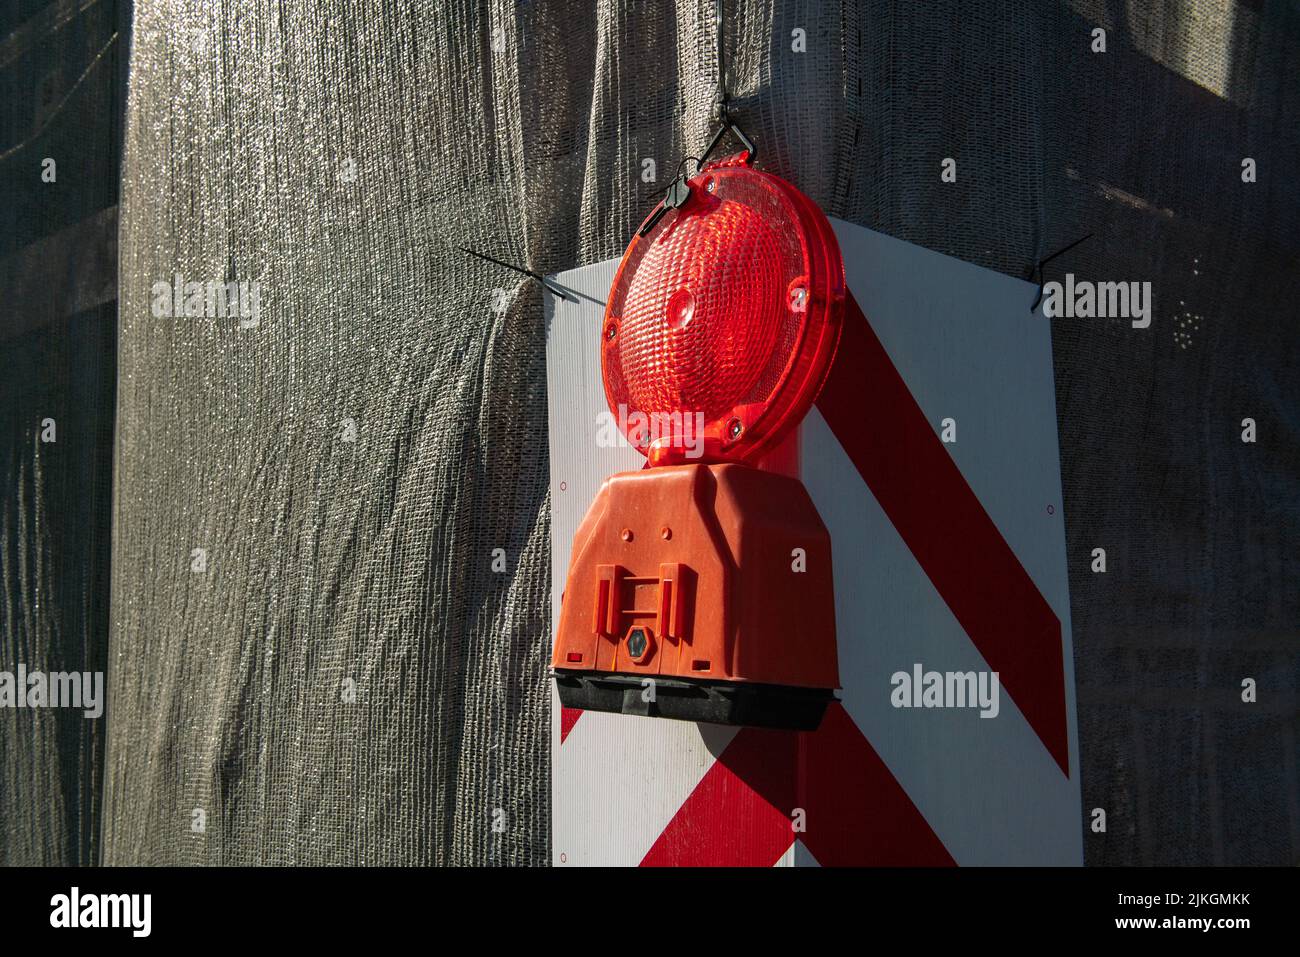 chantiers de construction: le feu rouge clignotant pour les chantiers de construction de routes, utilisé pour signaler la présence de chantiers de construction de bâtiments et de routes. Banque D'Images